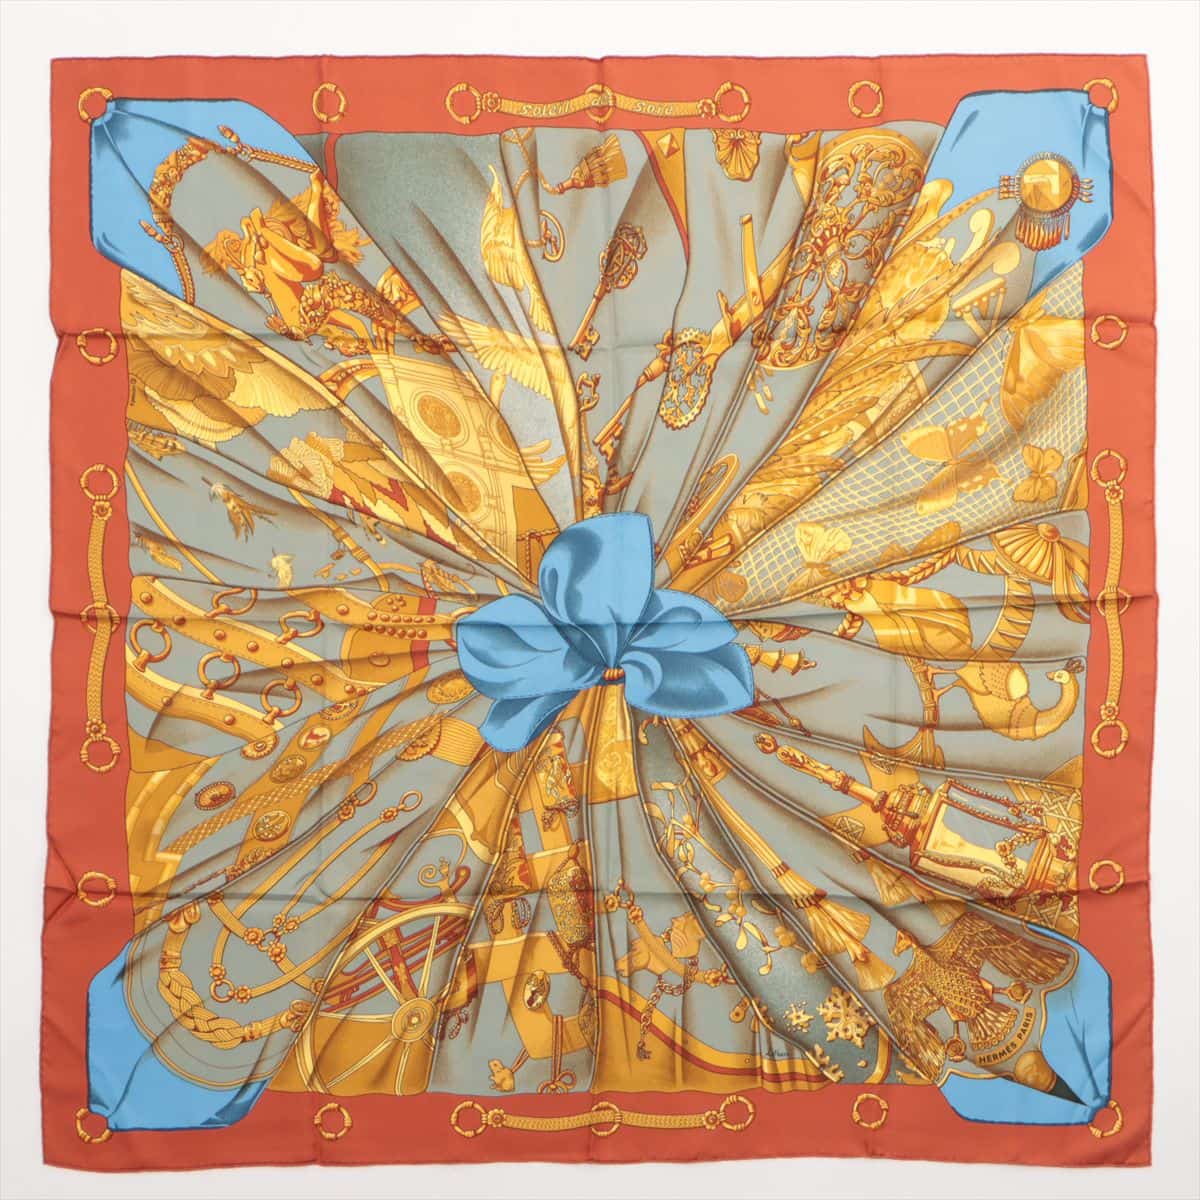 バンダナ/スカーフHERMES  カレ90  Soleil de Soie シルクの太陽 スカーフ